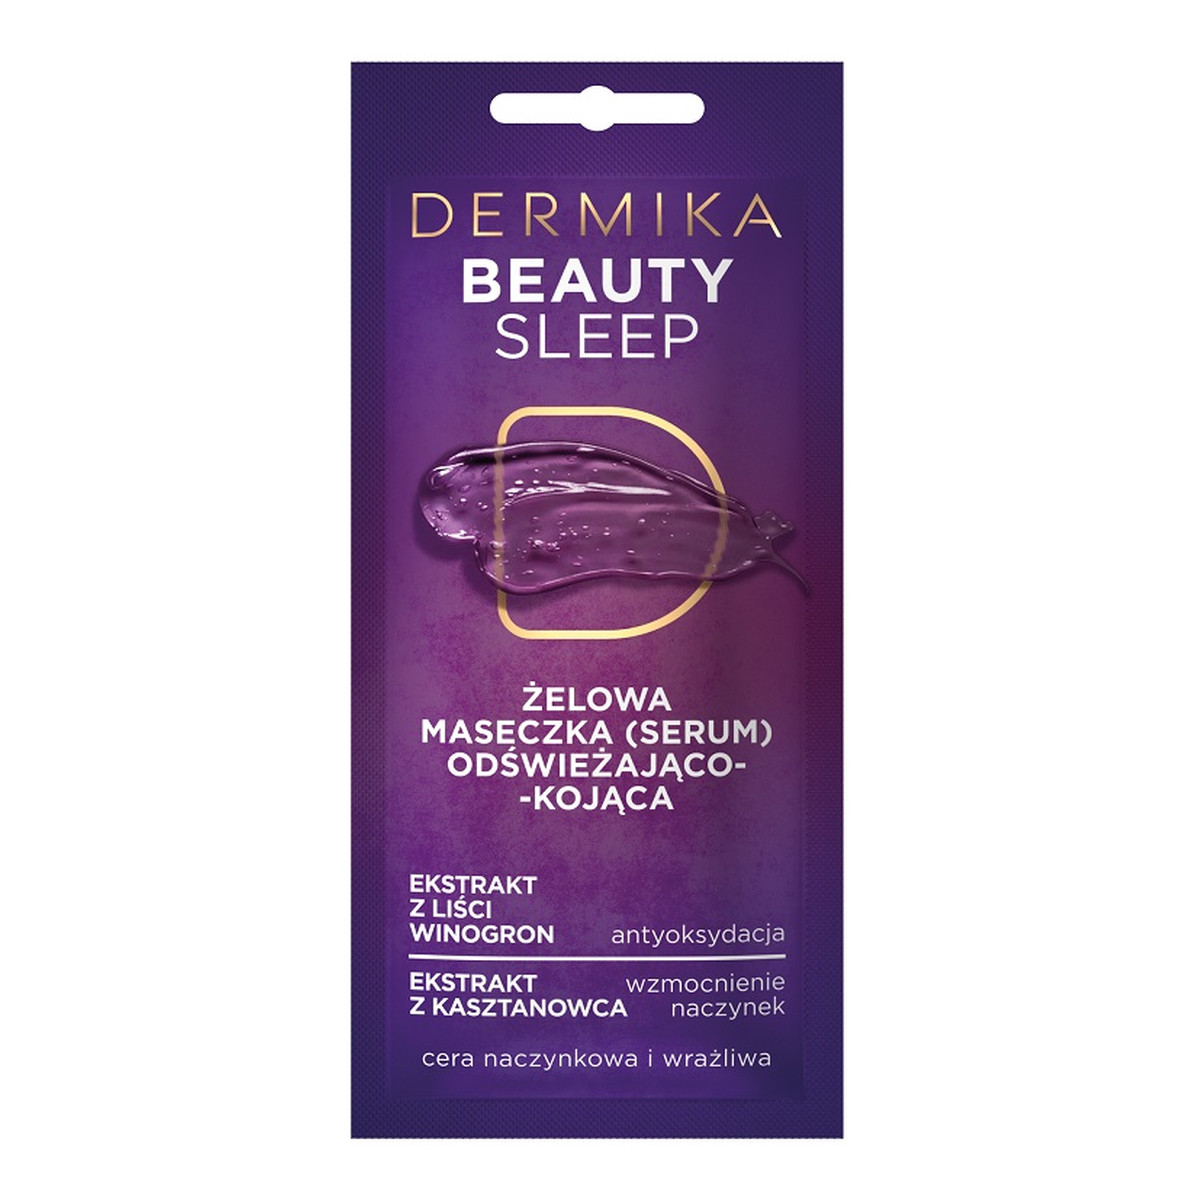 Dermika Maseczki Piękności Beauty Sleep żelowa maseczka odświeżająco-kojąca do cery naczynkowej i wrażliwej 10ml